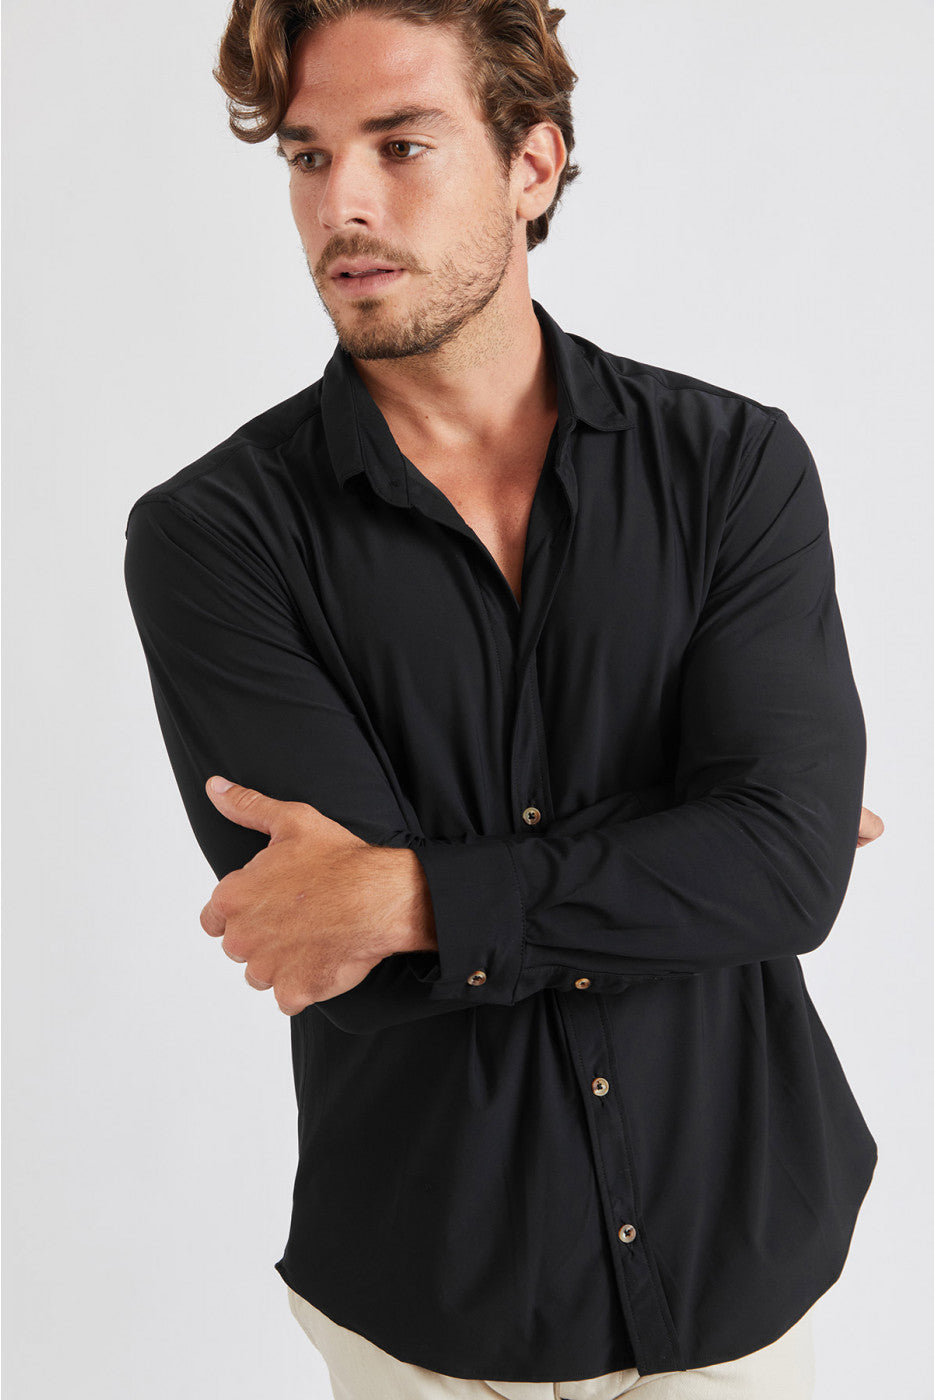 Alain Baiablue Shirt Black